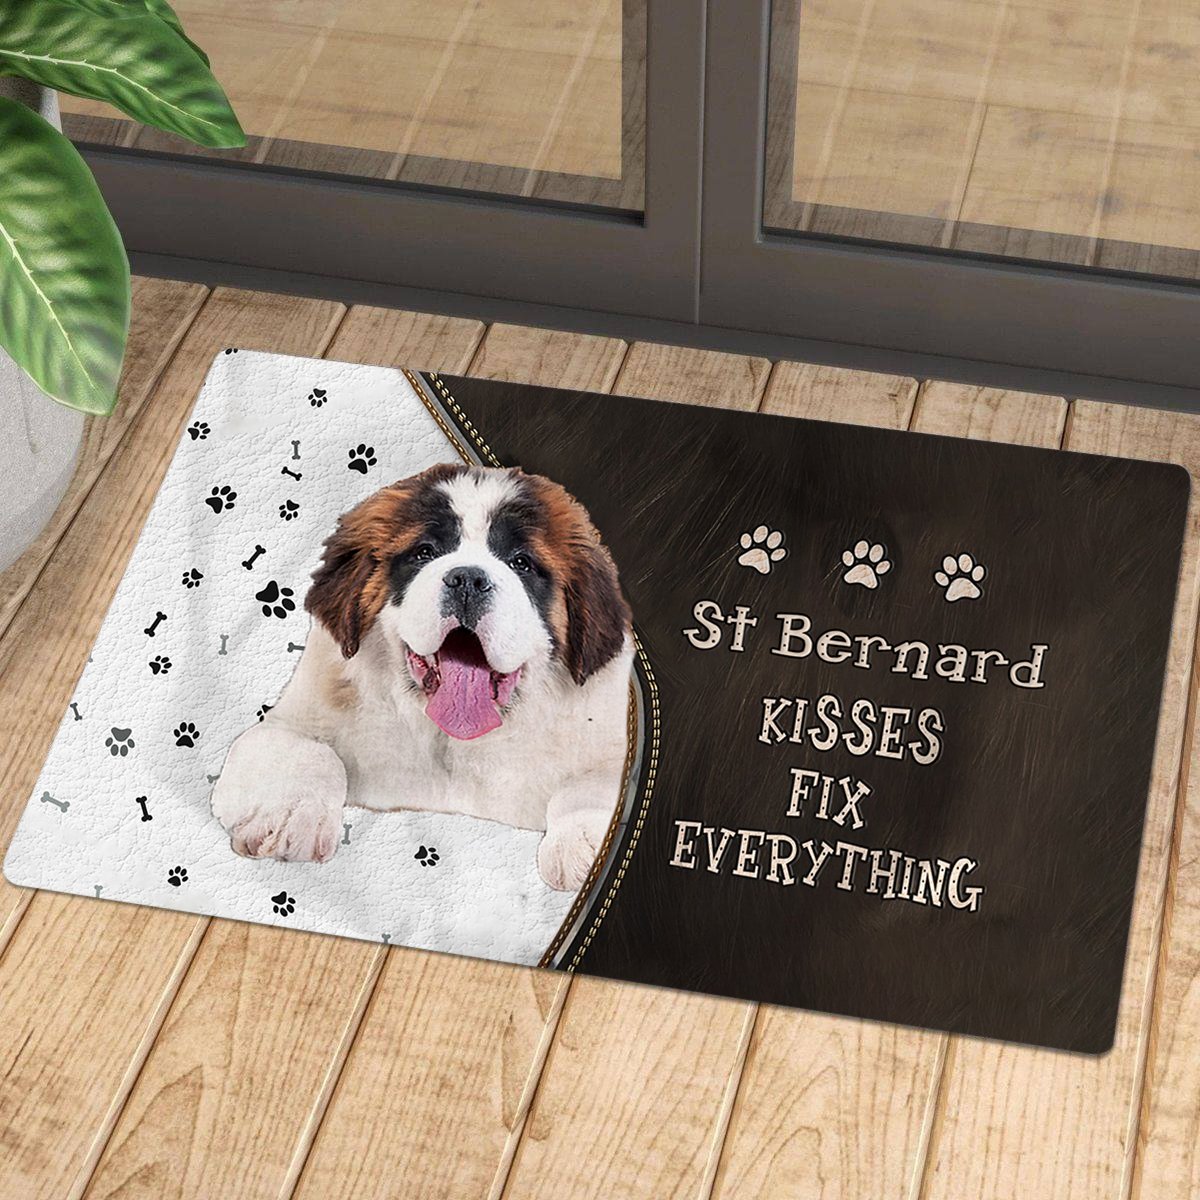 St Bernard Kisses Fix Everything Doormat